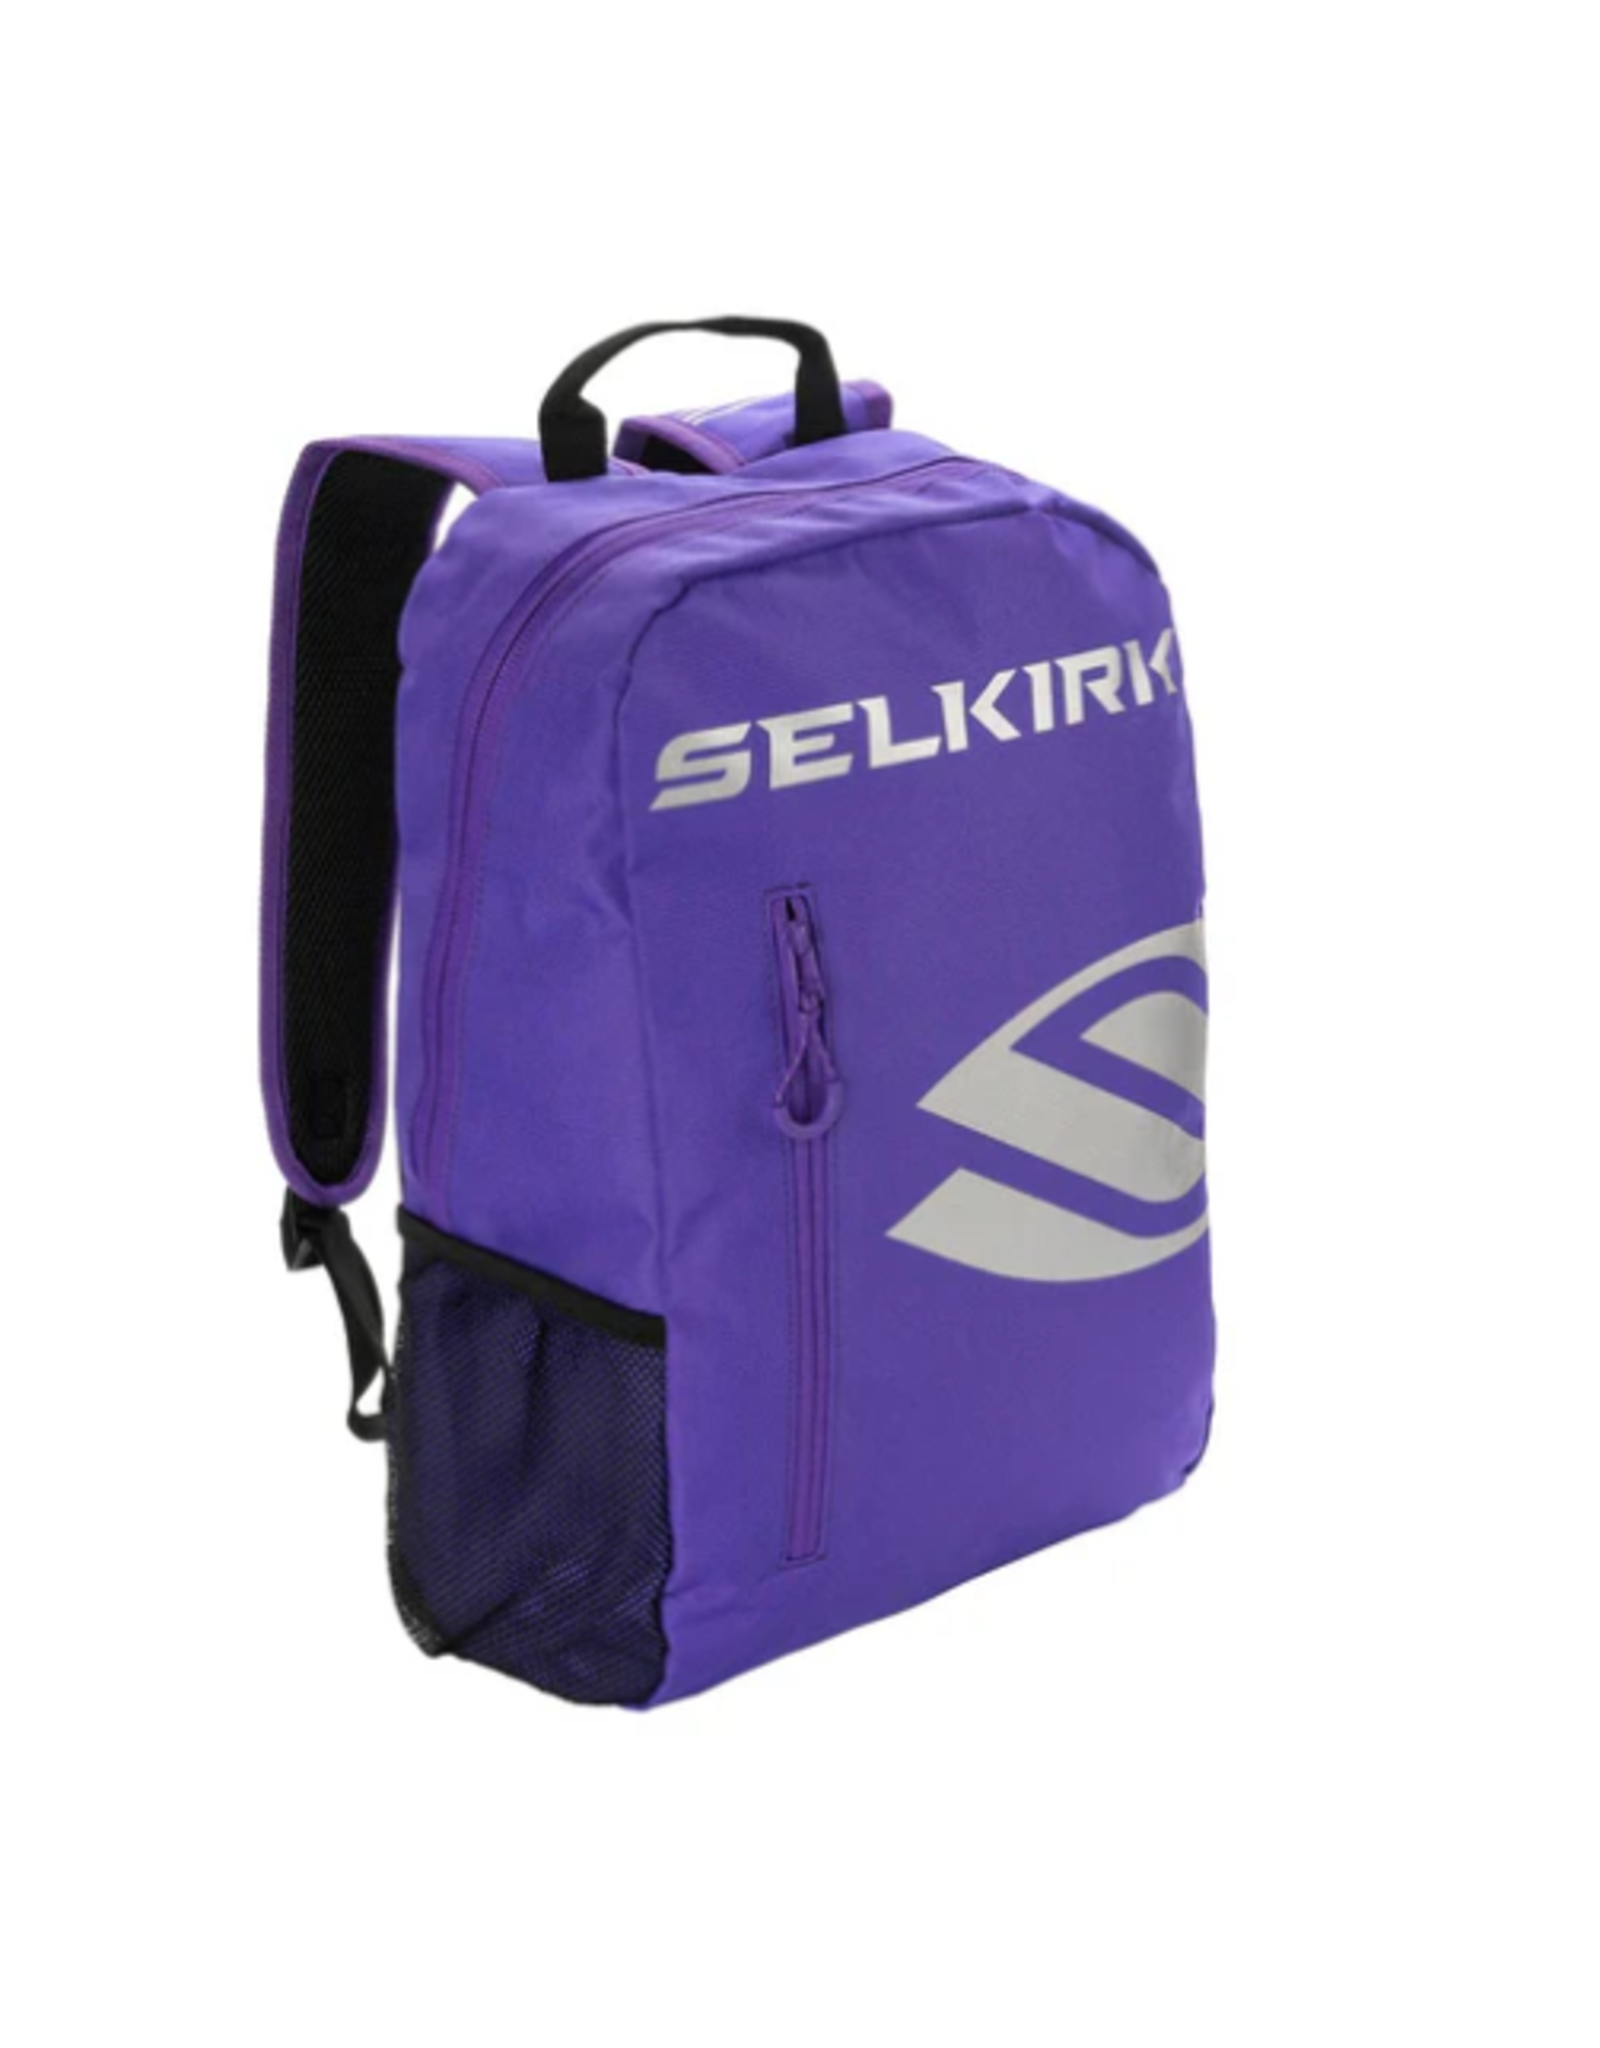 Selkirk Selkirk Core Series Day BackPack